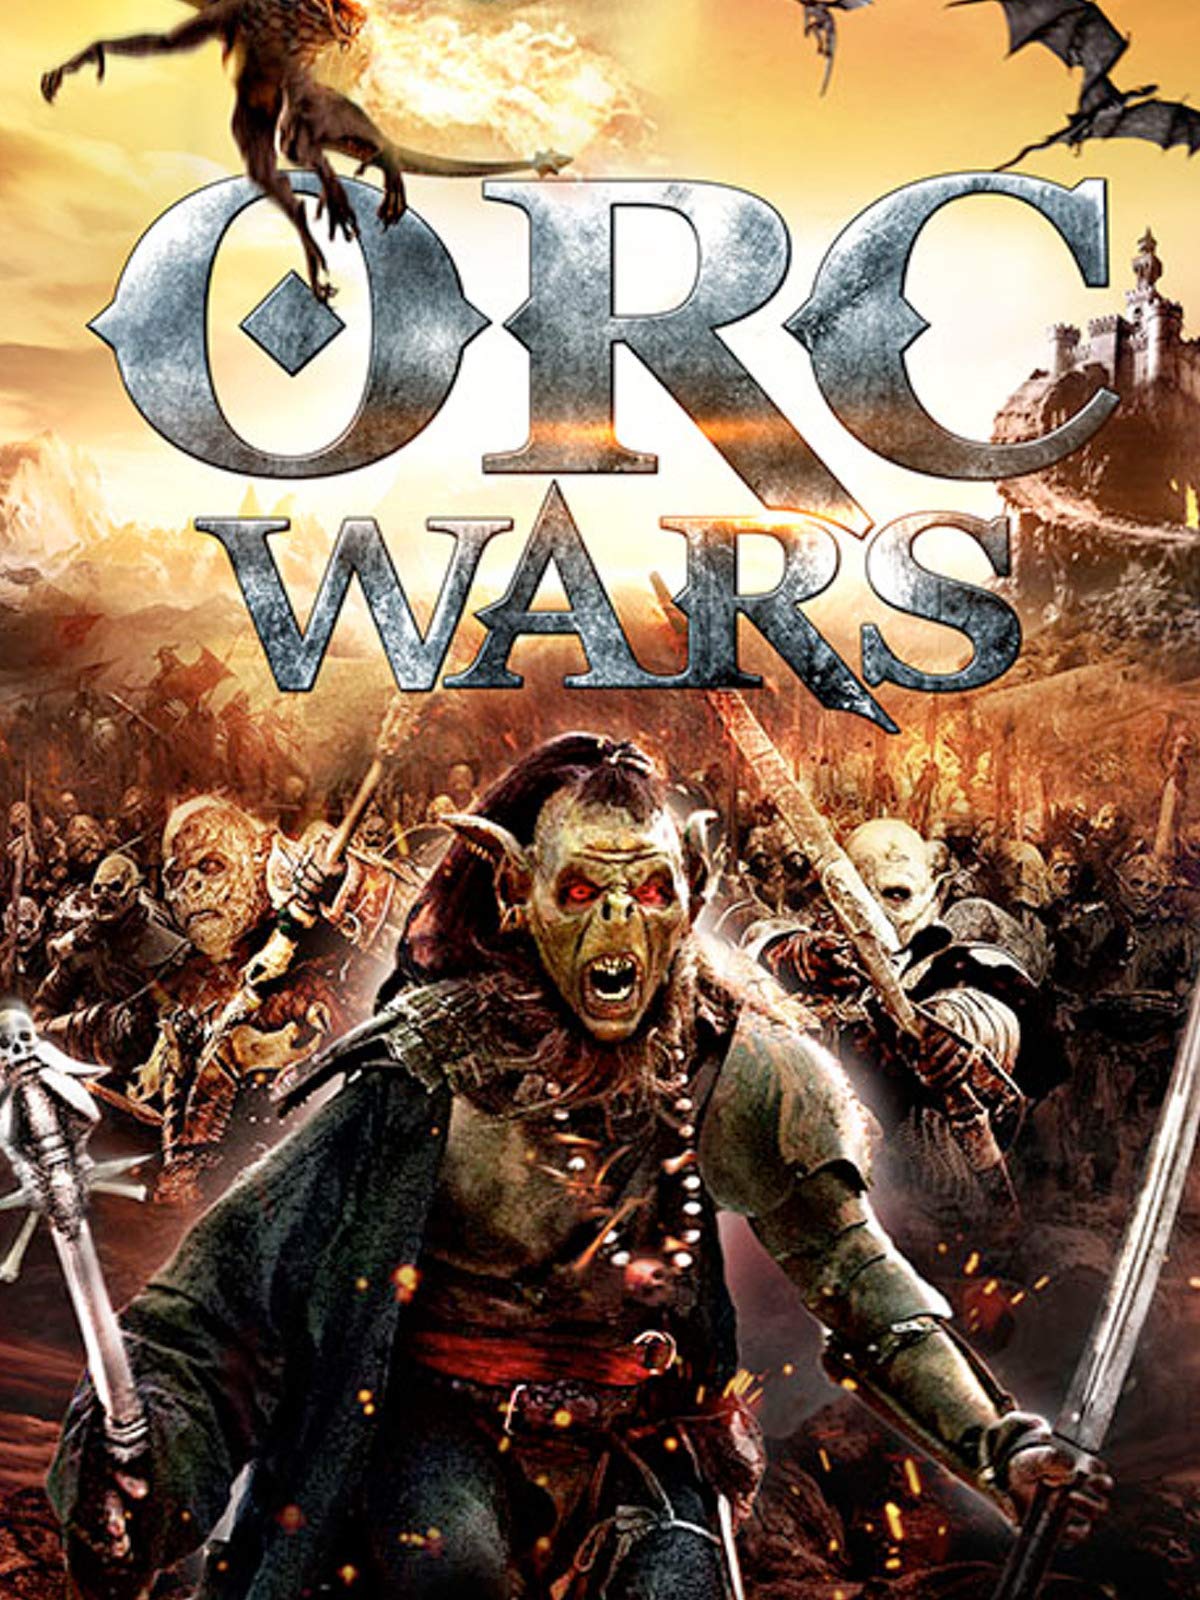 ดูหนังออนไลน์ฟรี Orc Wars (2013) สงครามออร์คพันธุ์โหด